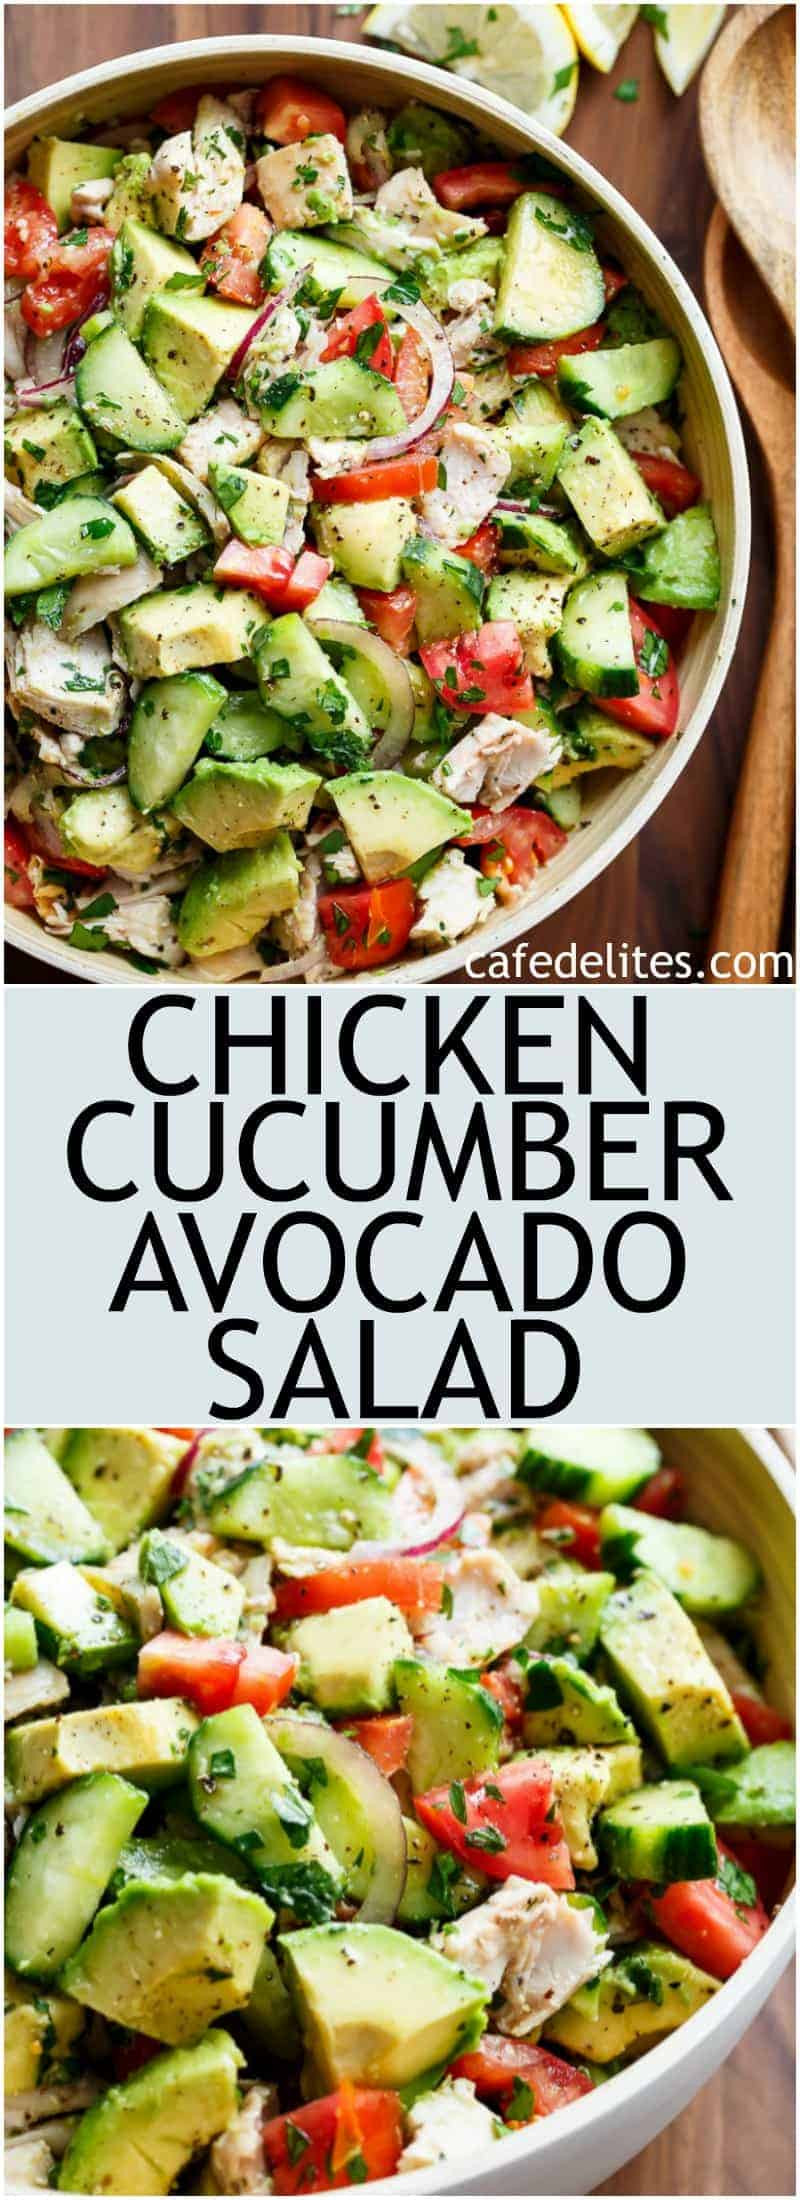 Chicken Avocado Salad
 Chicken Cucumber Avocado Salad NO COOK Cafe Delites